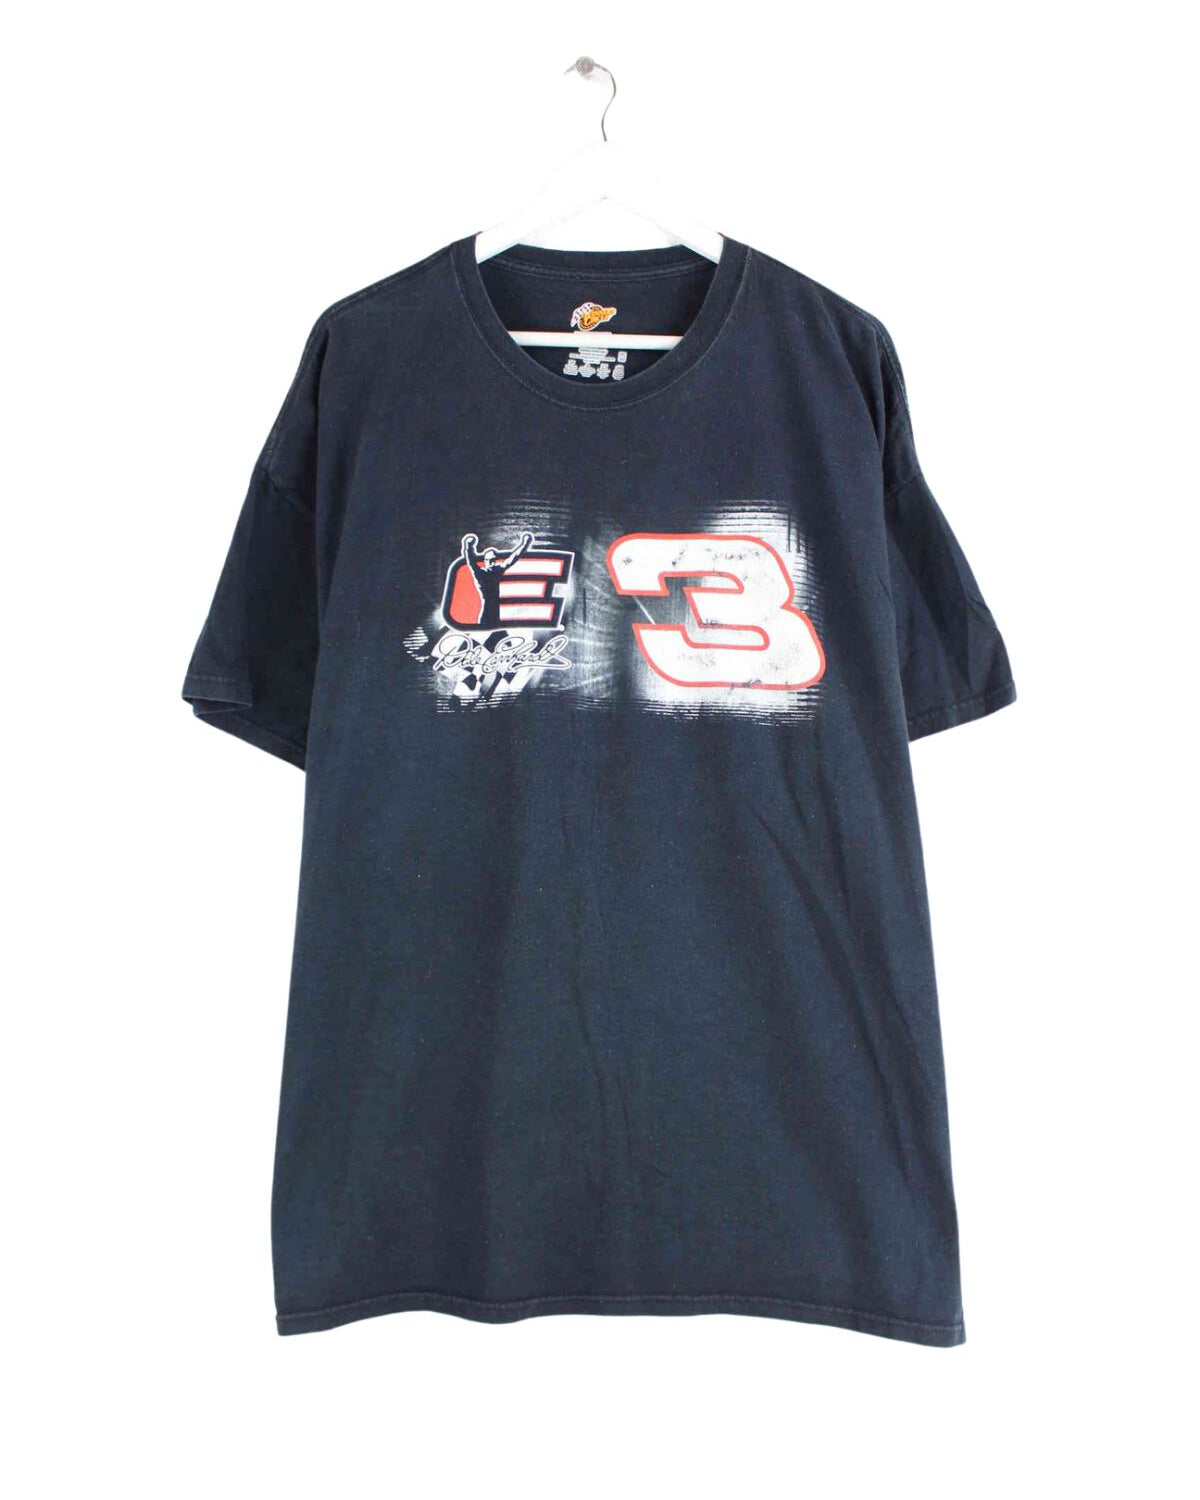 Nascar Racing Print T-Shirt Schwarz 3XL (front image)